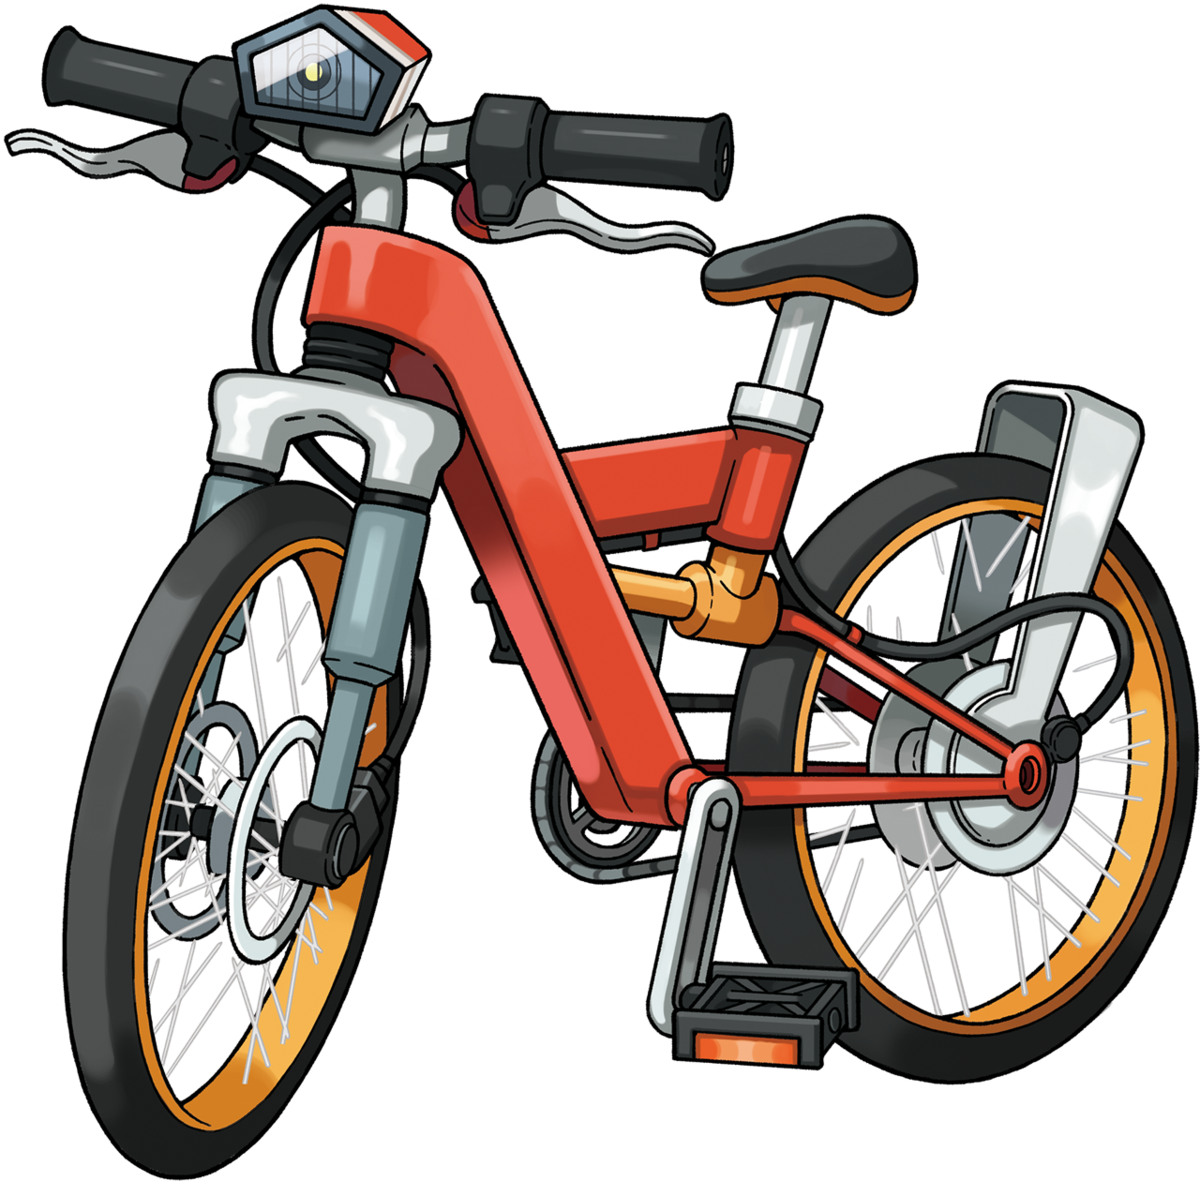 bicyclette pokemon rubis omega